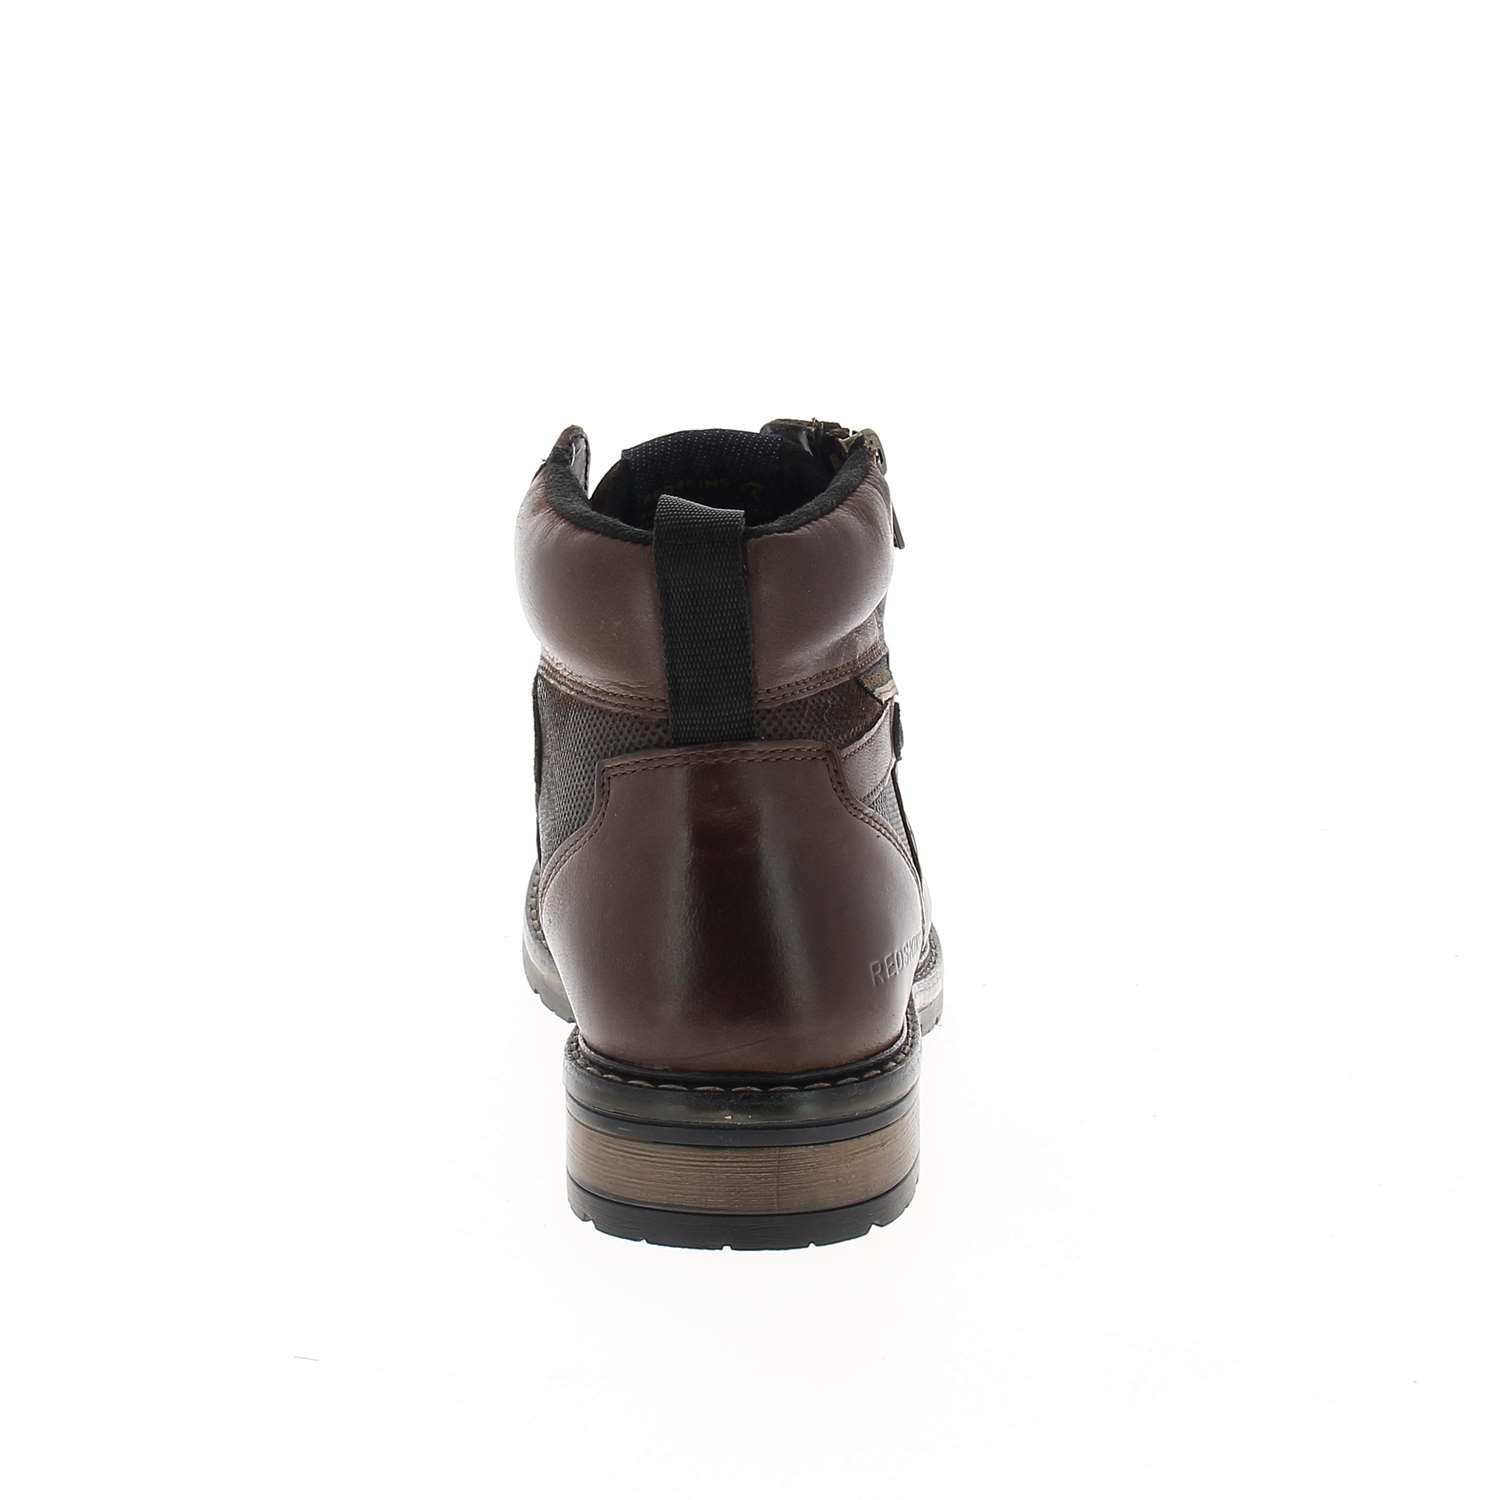 04 - ETERNEL - CLEON - Boots et bottines - Cuir